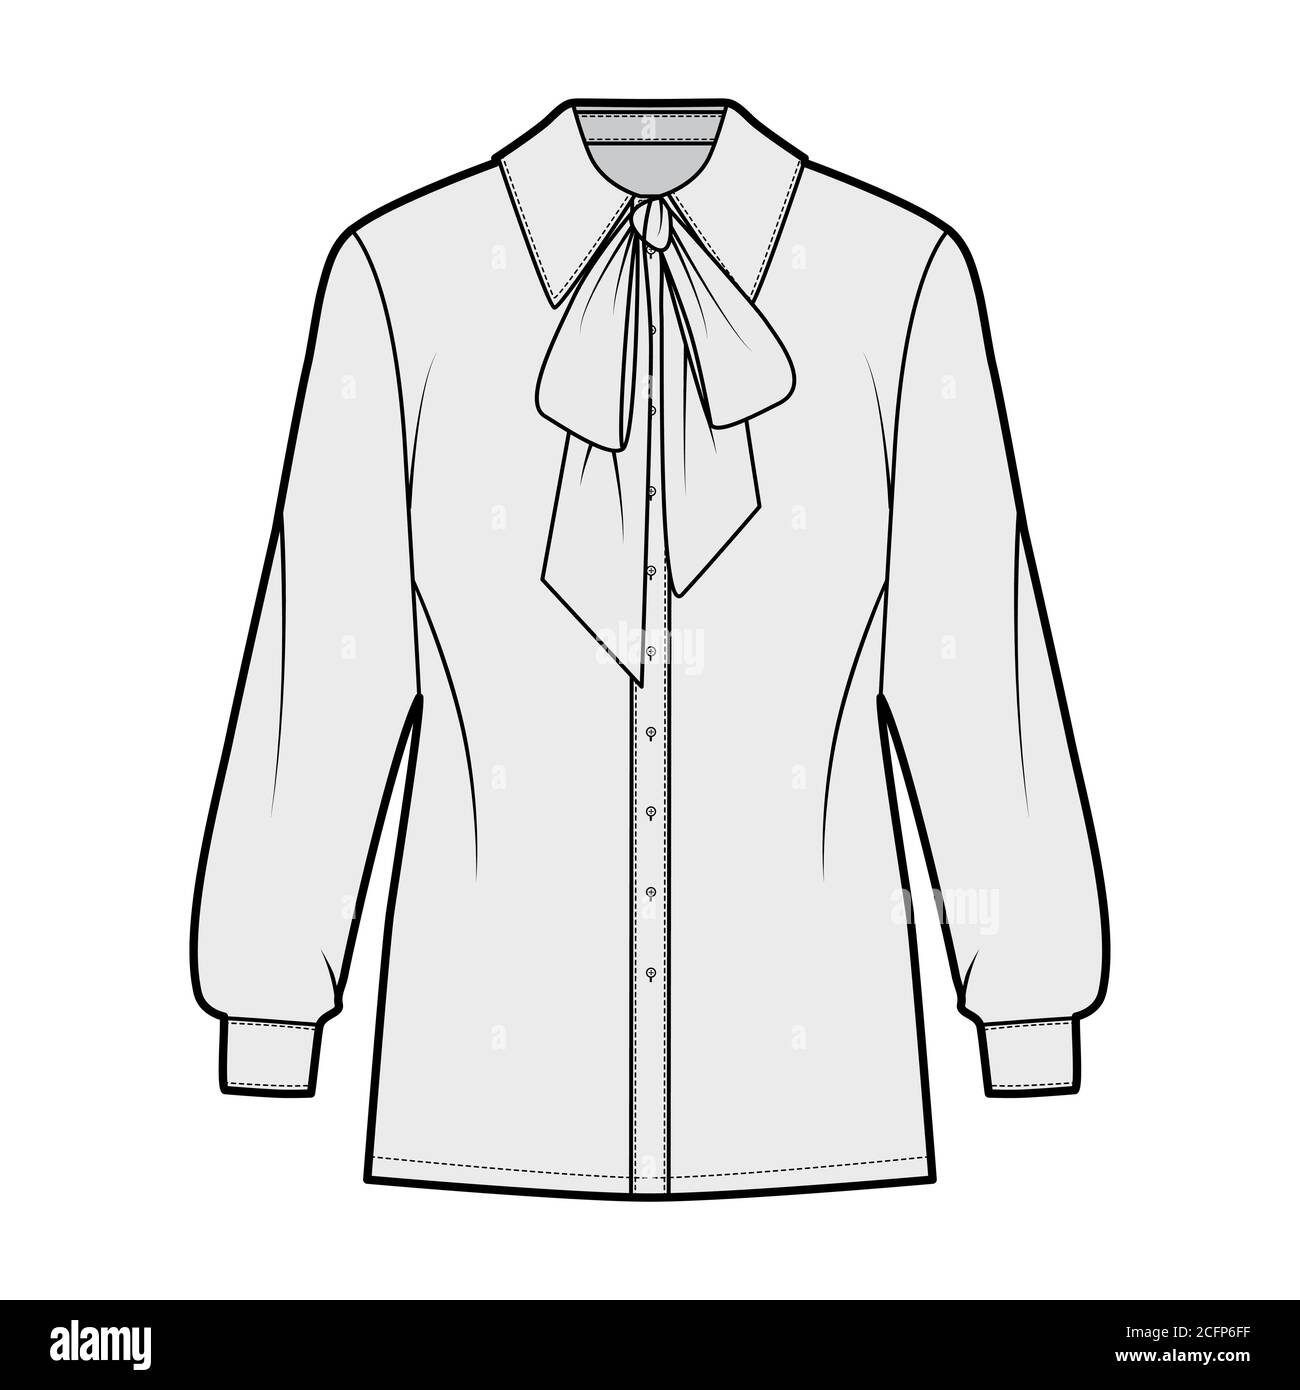 Coño-lazo camisa técnica ilustración de moda con manga larga con puño,  ajuste relajado, cierre de botón delantero, cuello regular. Plantilla de  indumentaria plana en la parte delantera, color gris. Mujeres hombres unisex